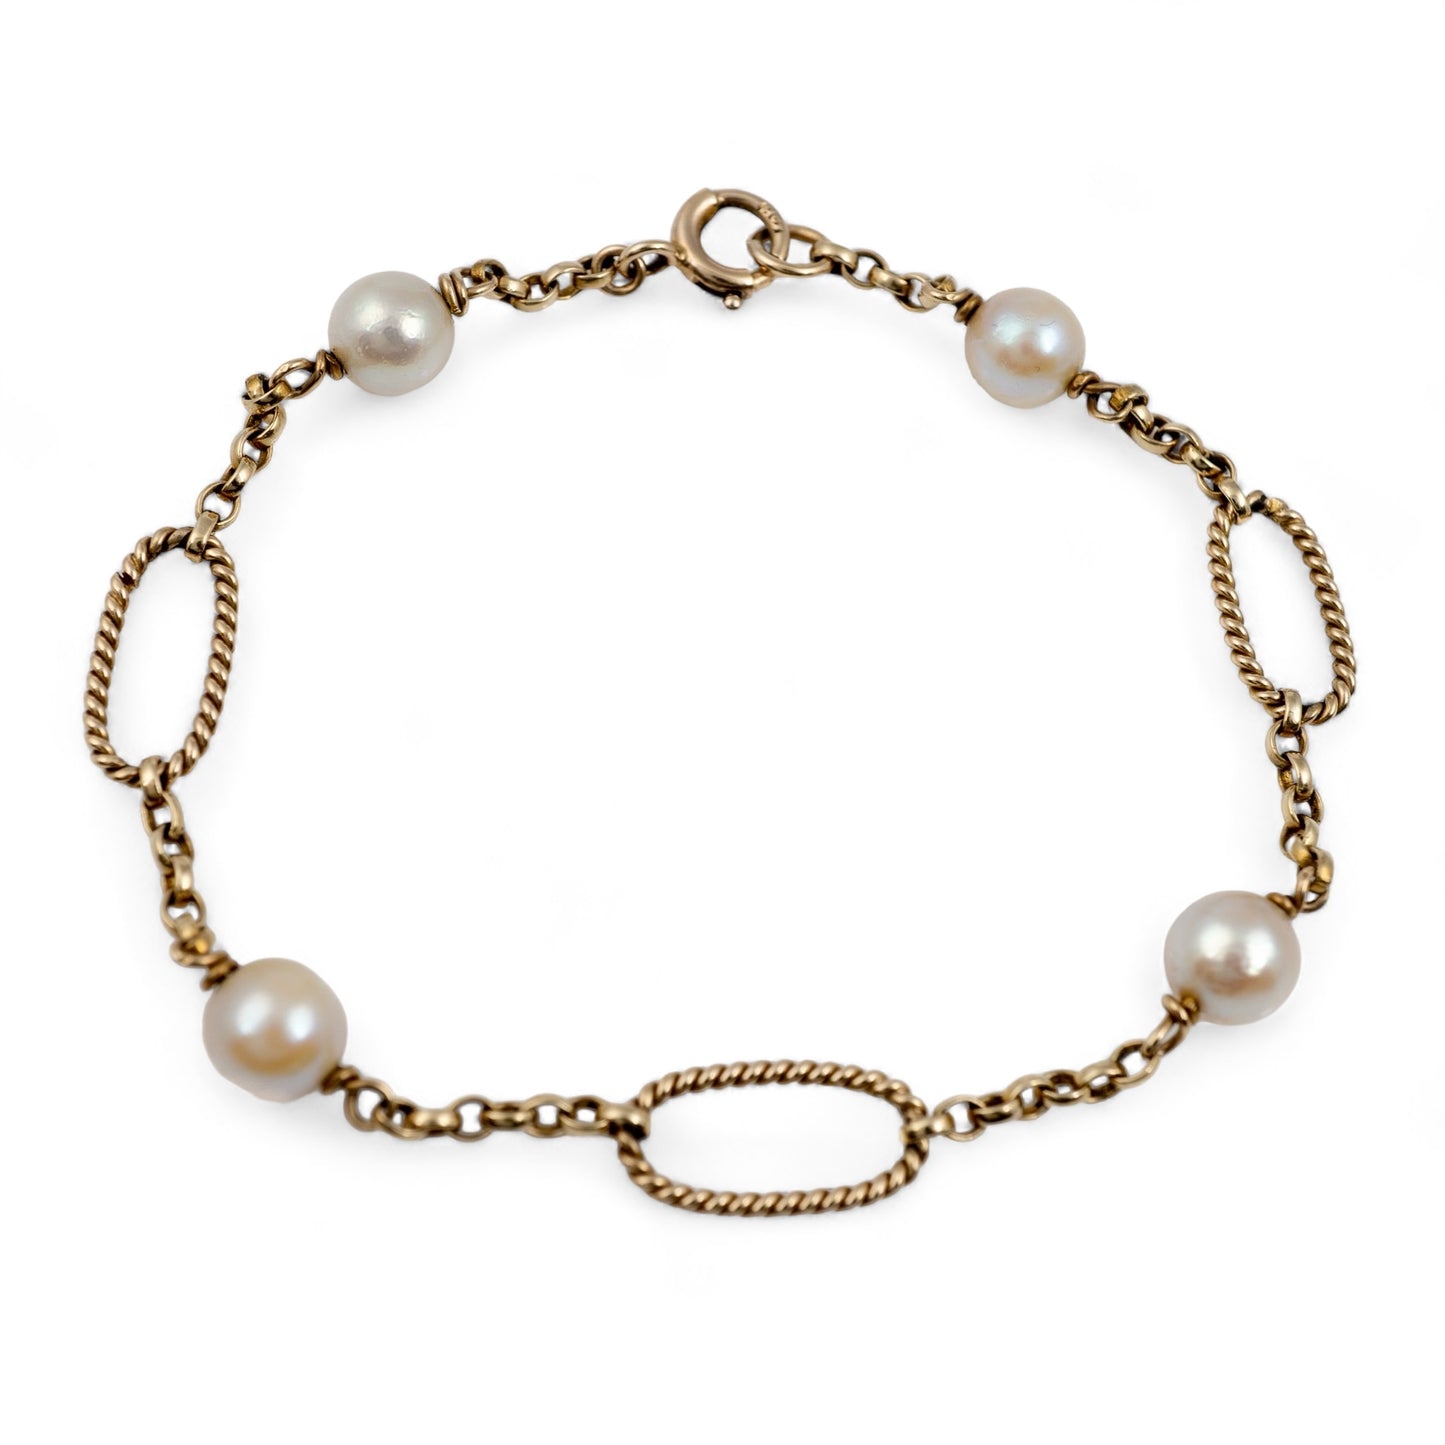 Pearl bracelet gold links women 